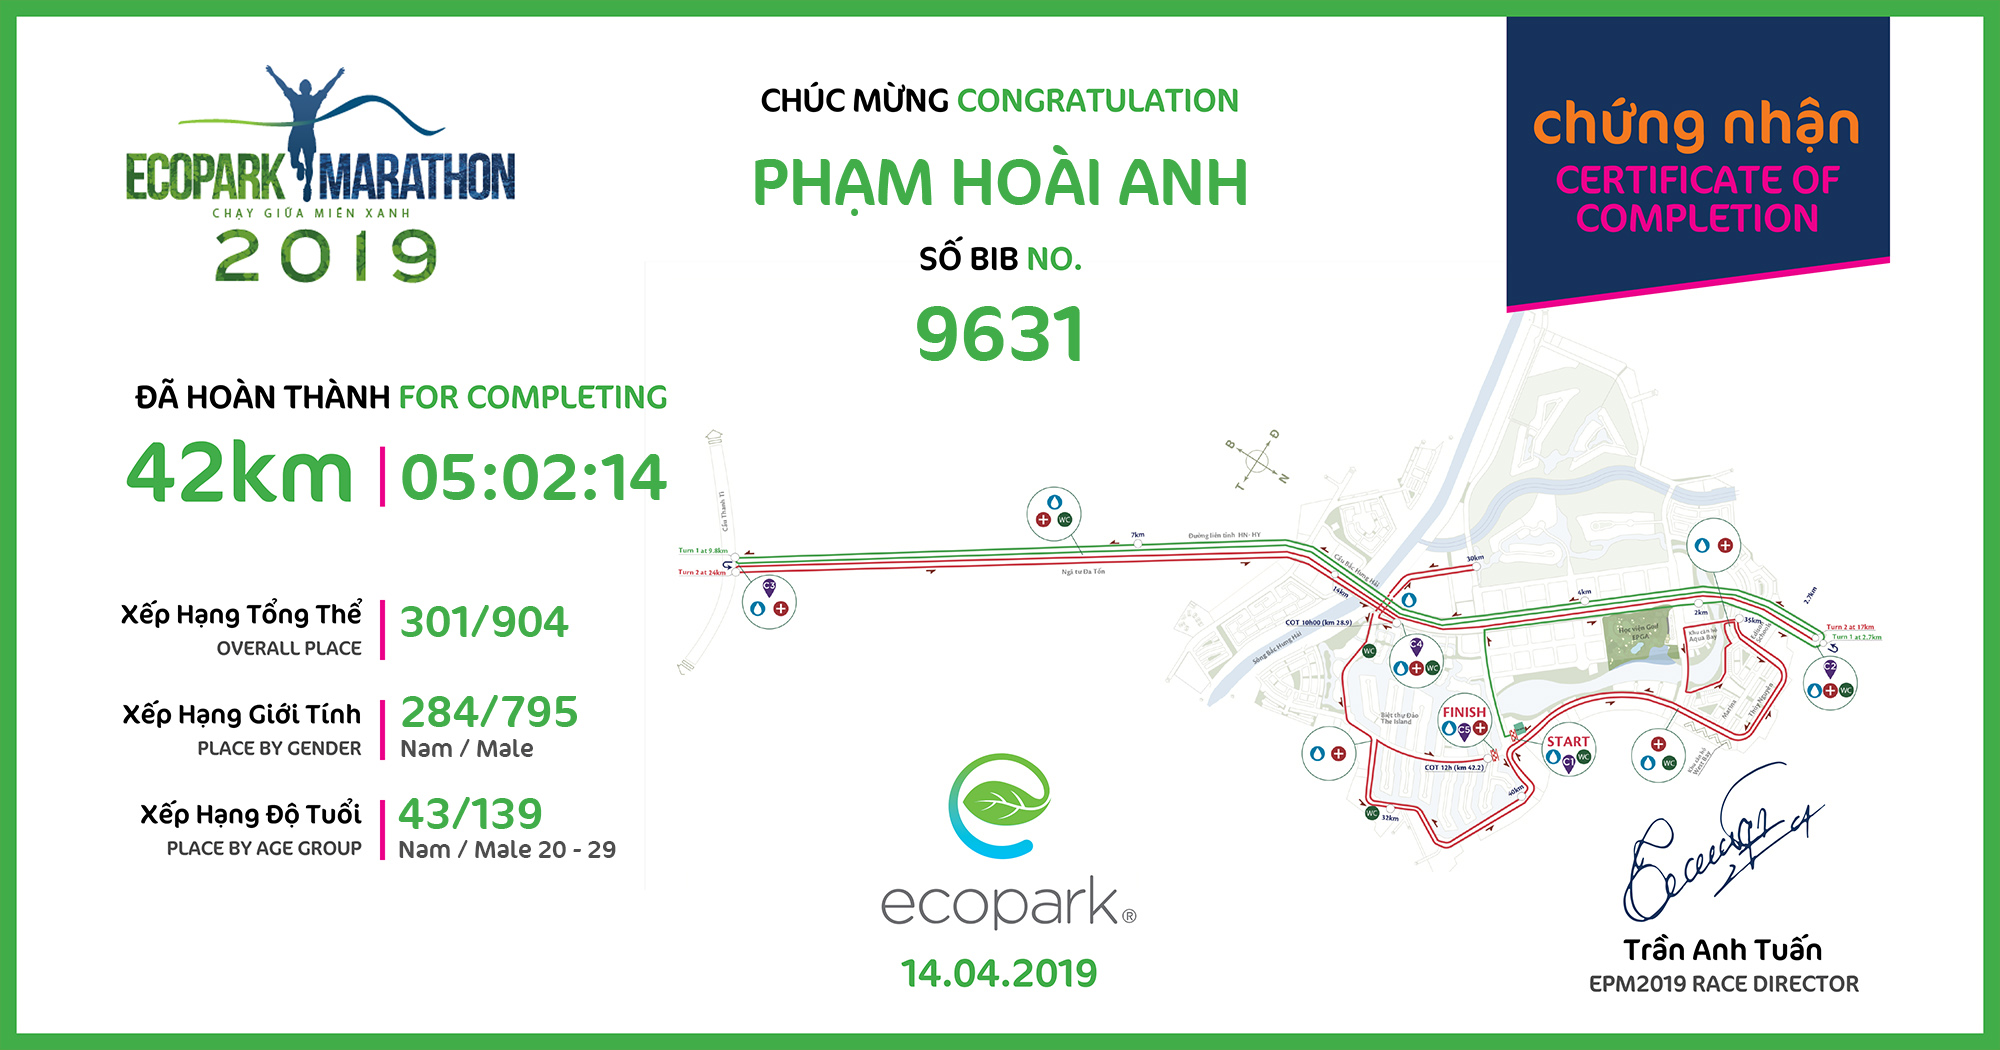 9631 - Phạm Hoài Anh